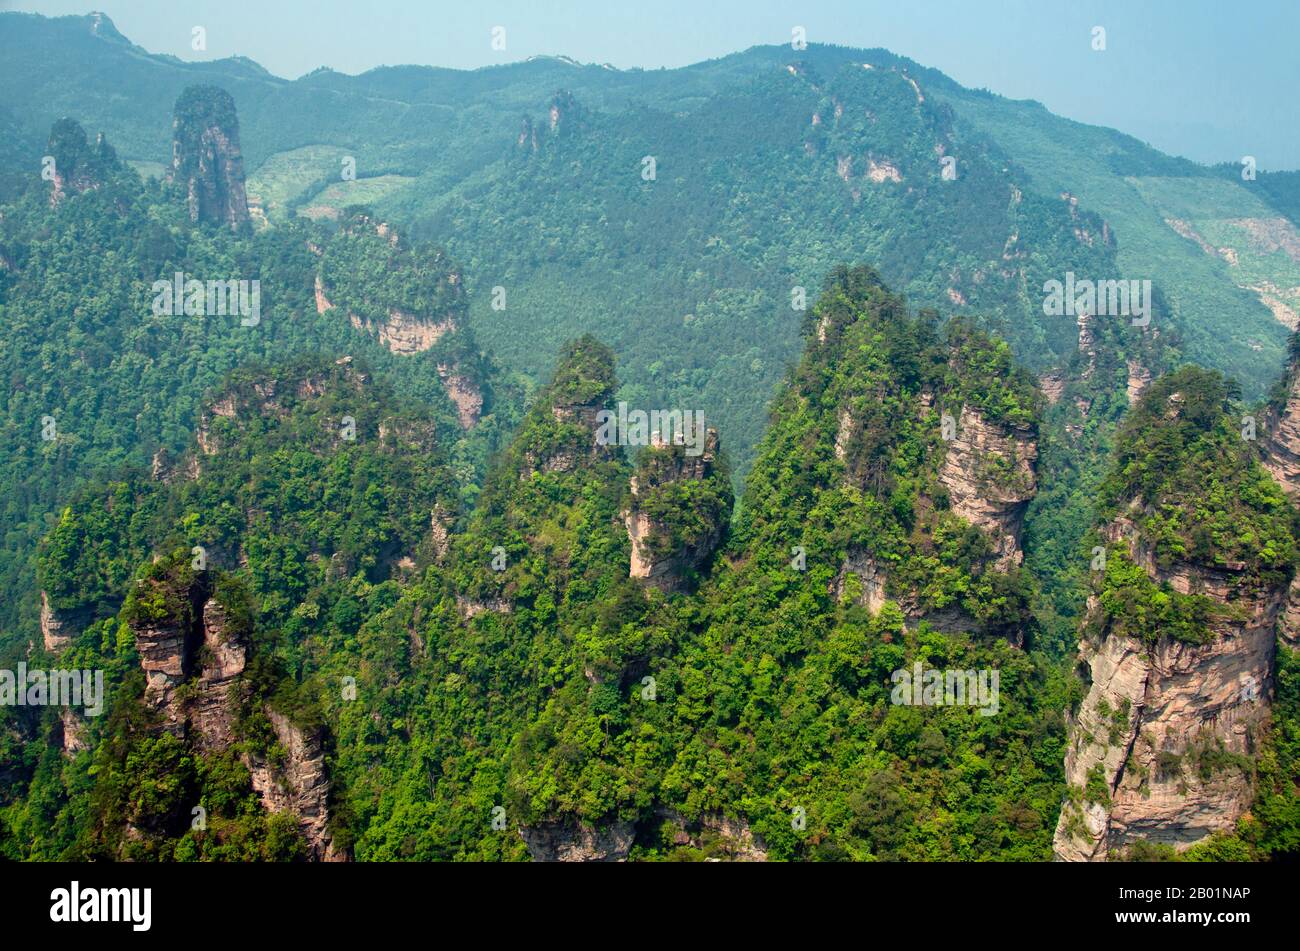 Chine : piliers et sommets de grès de quartzite, Wulingyuan Scenic Area (Zhangjiajie), province du Hunan. Wulingyuan Scenic Reserve est une zone d'intérêt pittoresque et historique dans la province du Hunan. Il est connu pour ses environ 3 100 piliers de grès quartzite, dont certains mesurent plus de 800 mètres (2 600 pieds) de hauteur et sont un type de formation karstique. En 1992, il a été désigné site du patrimoine mondial de l'UNESCO. Banque D'Images